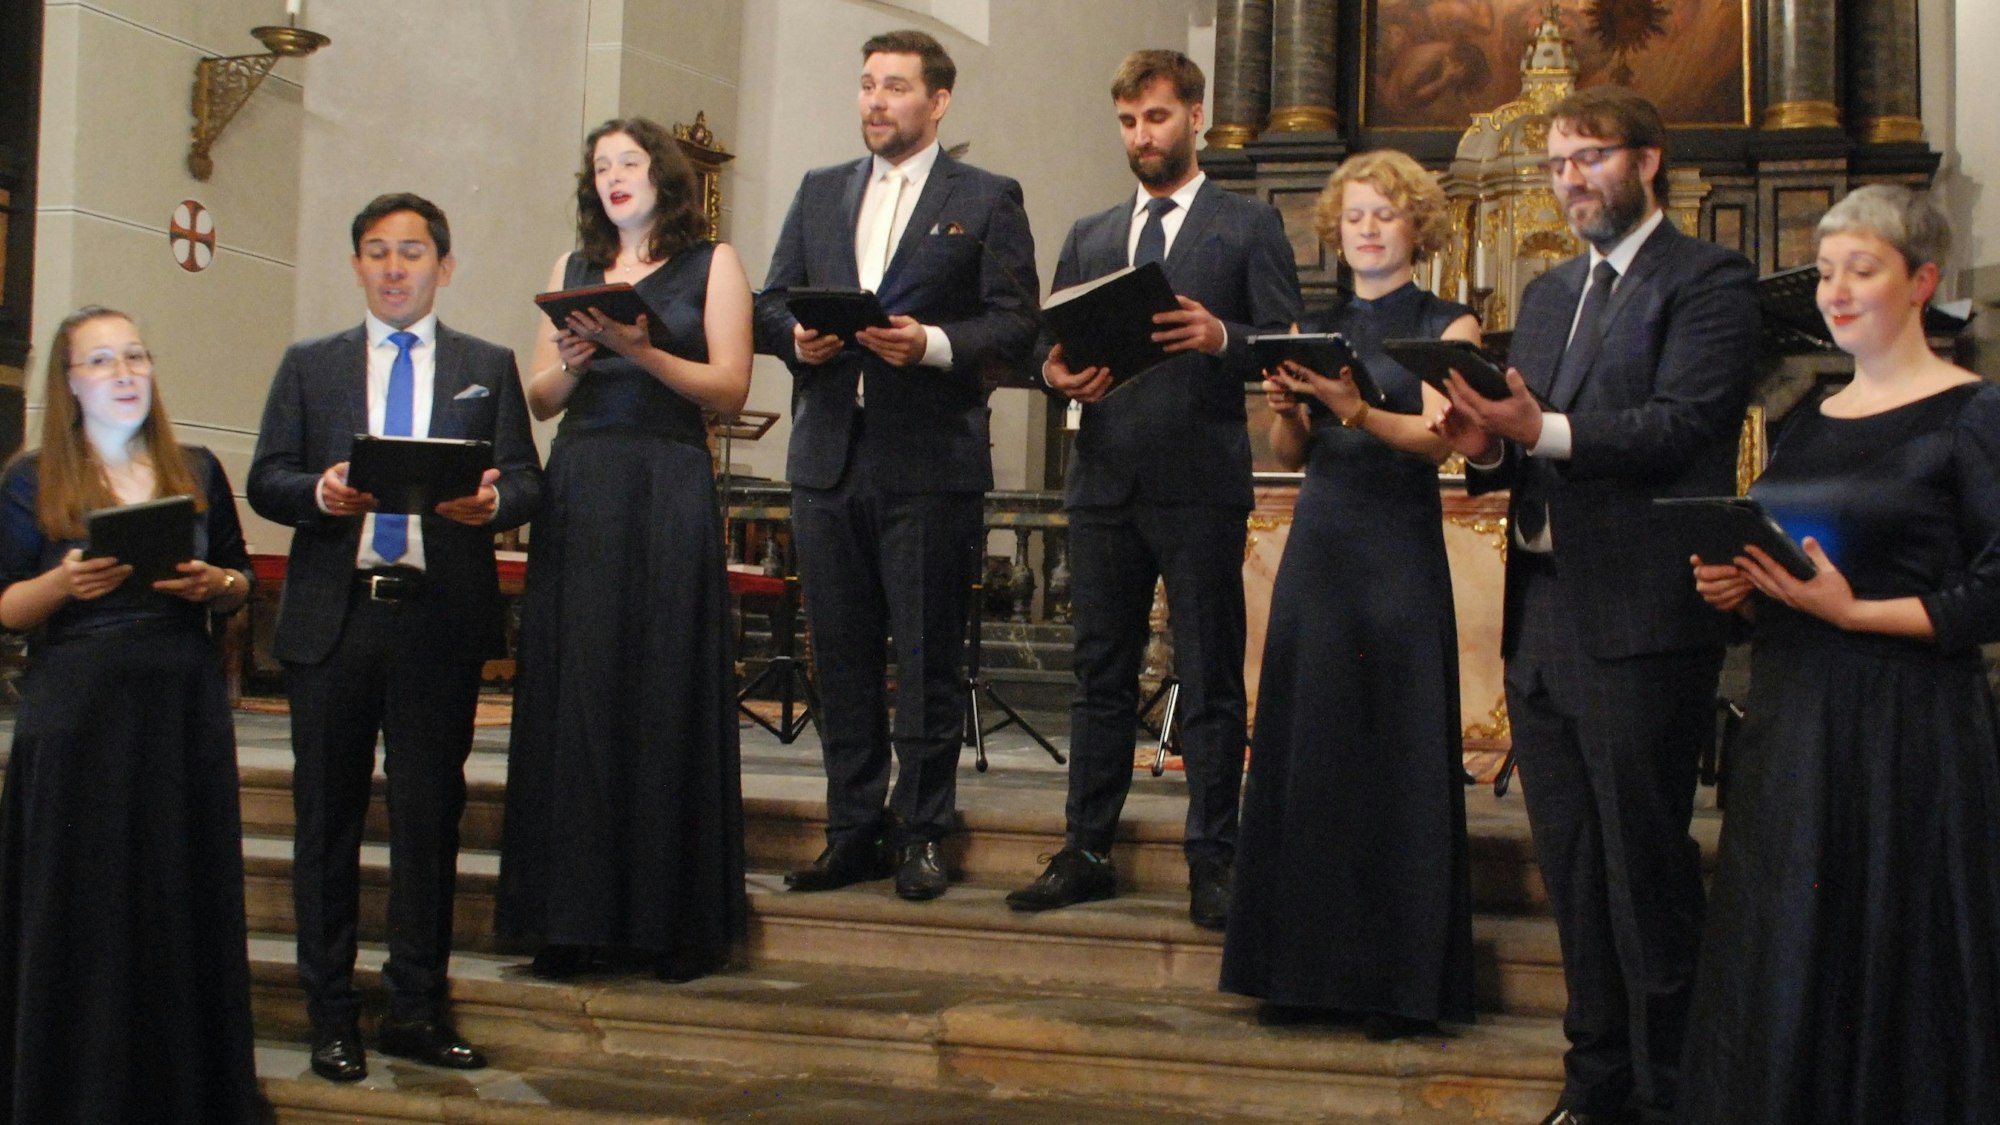 Das Ensemble Vokalexkursion Köln steht bei einem Auftritt in festlicher Kleidung im Altarraum einer Kirche.